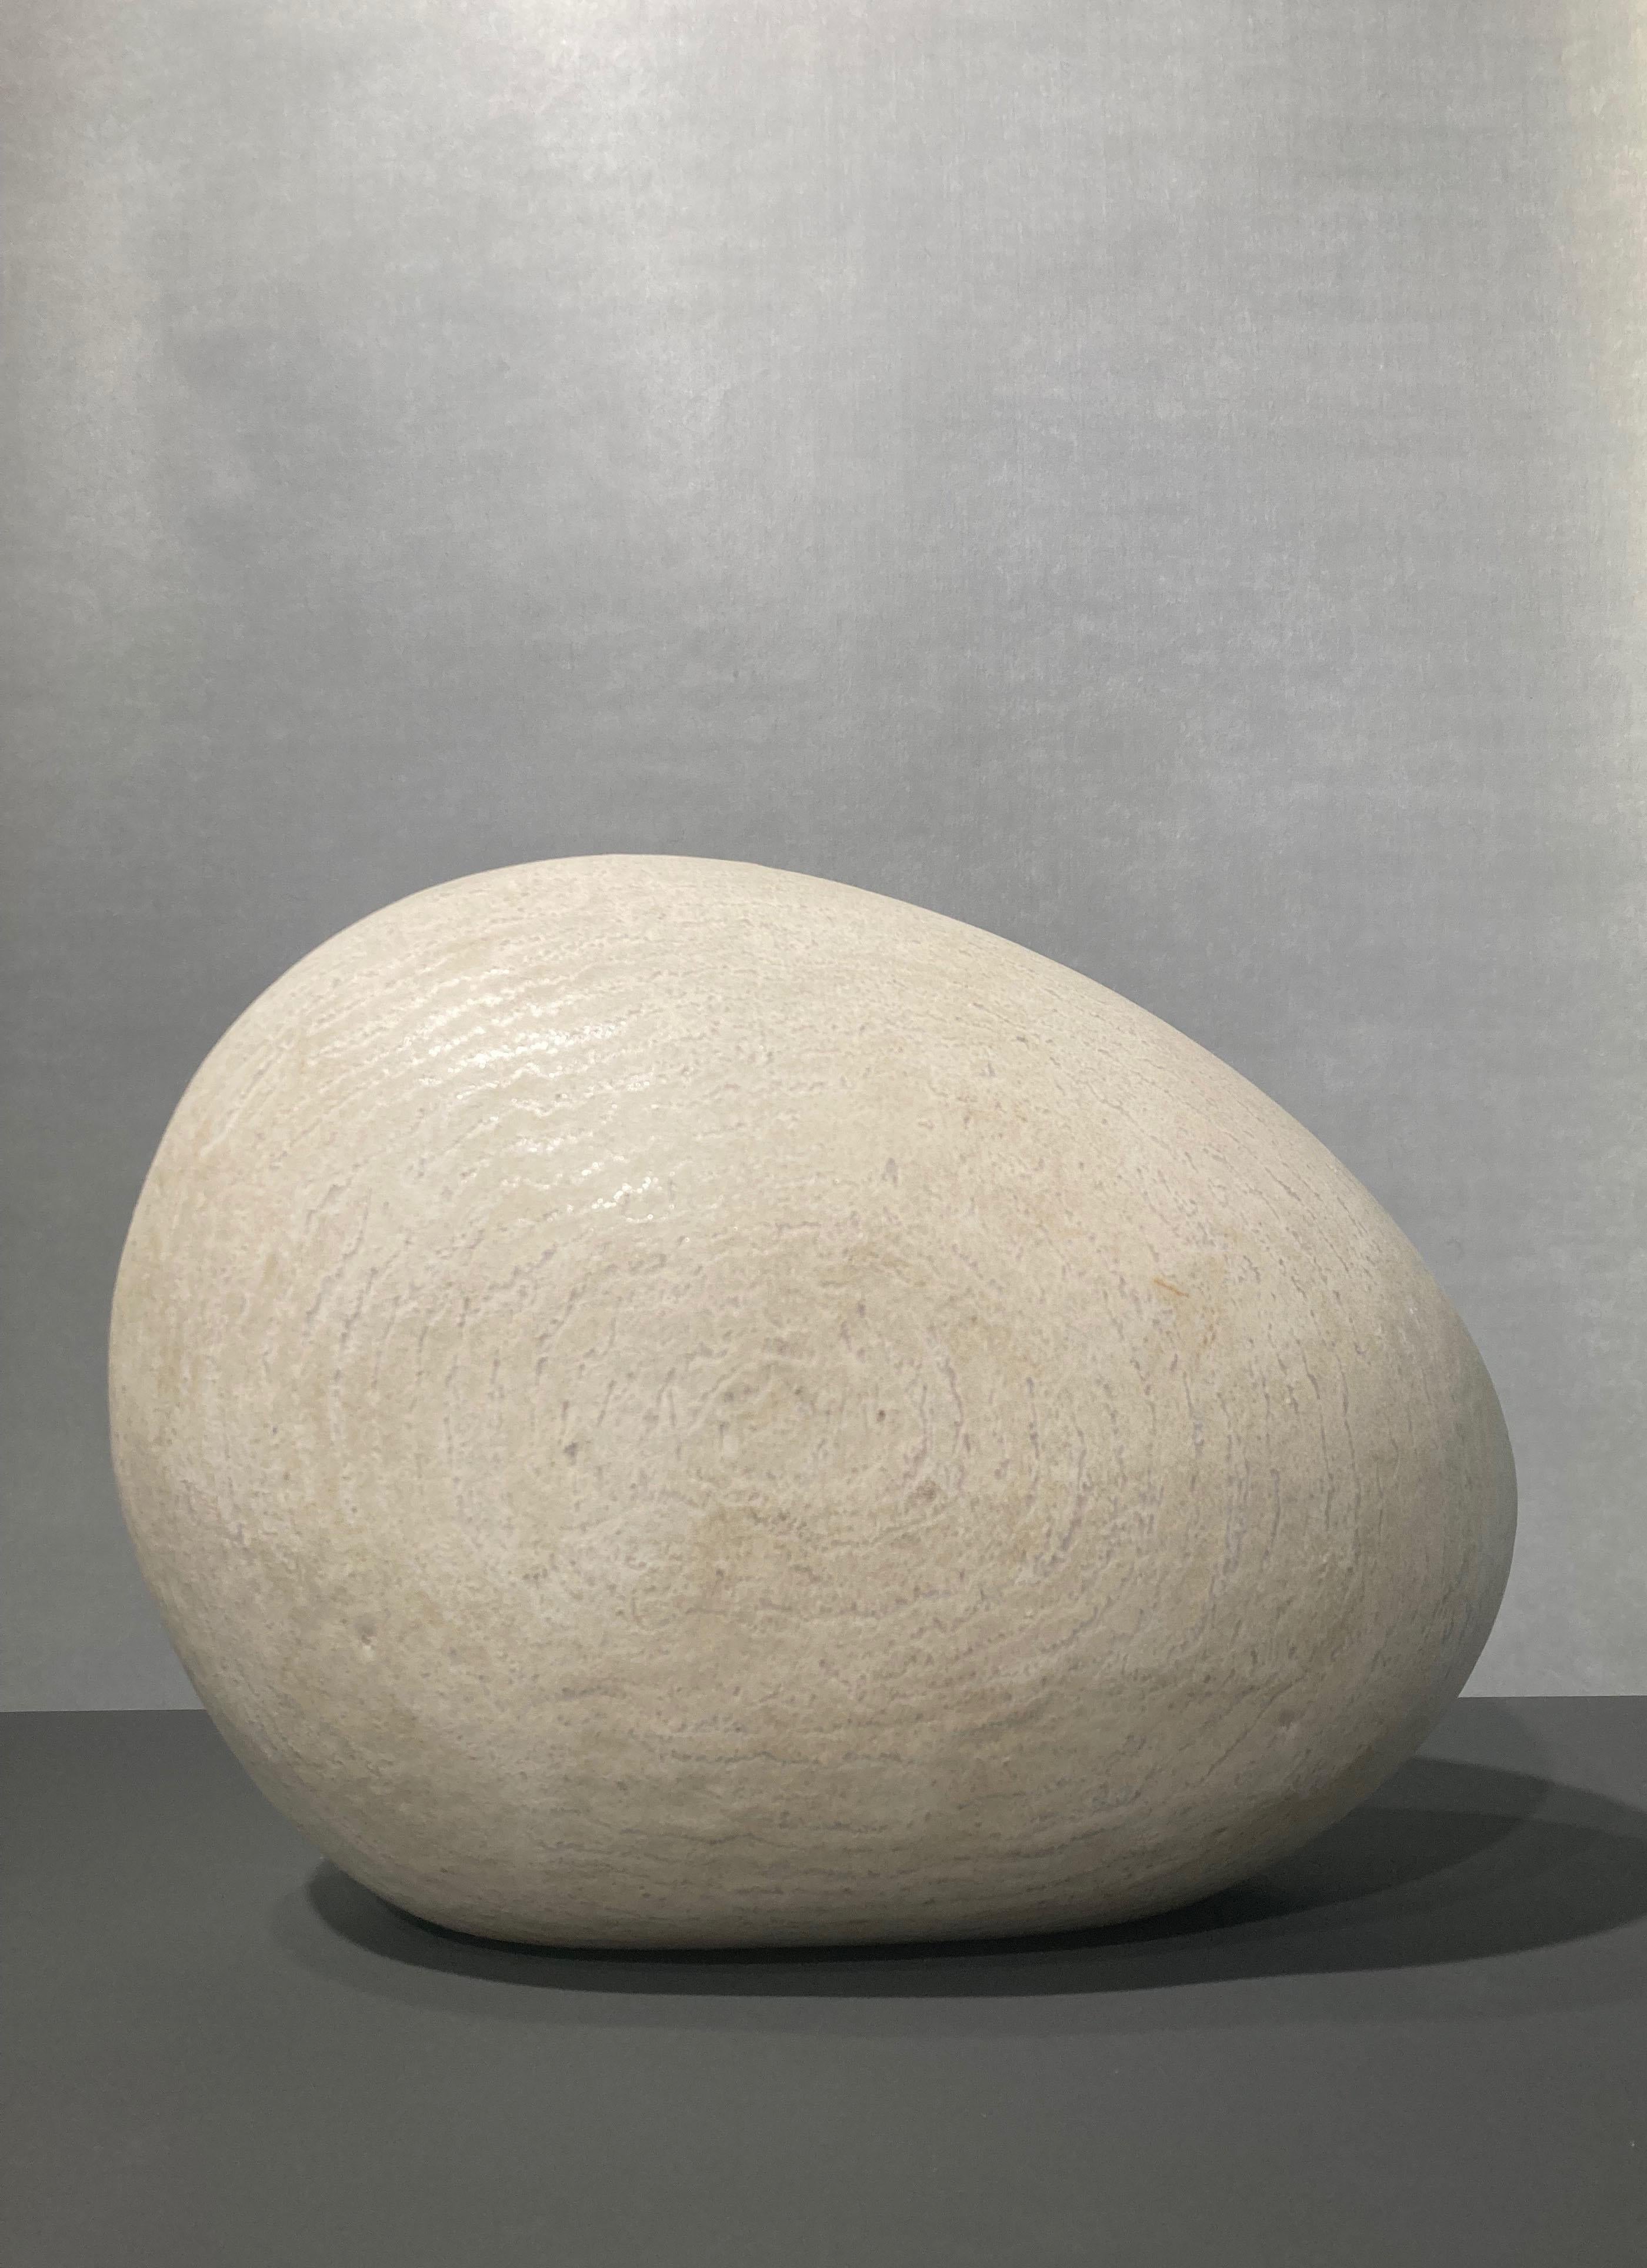 Maria Vlandi Abstract Sculpture – Ovale weiße Form mit Spuren